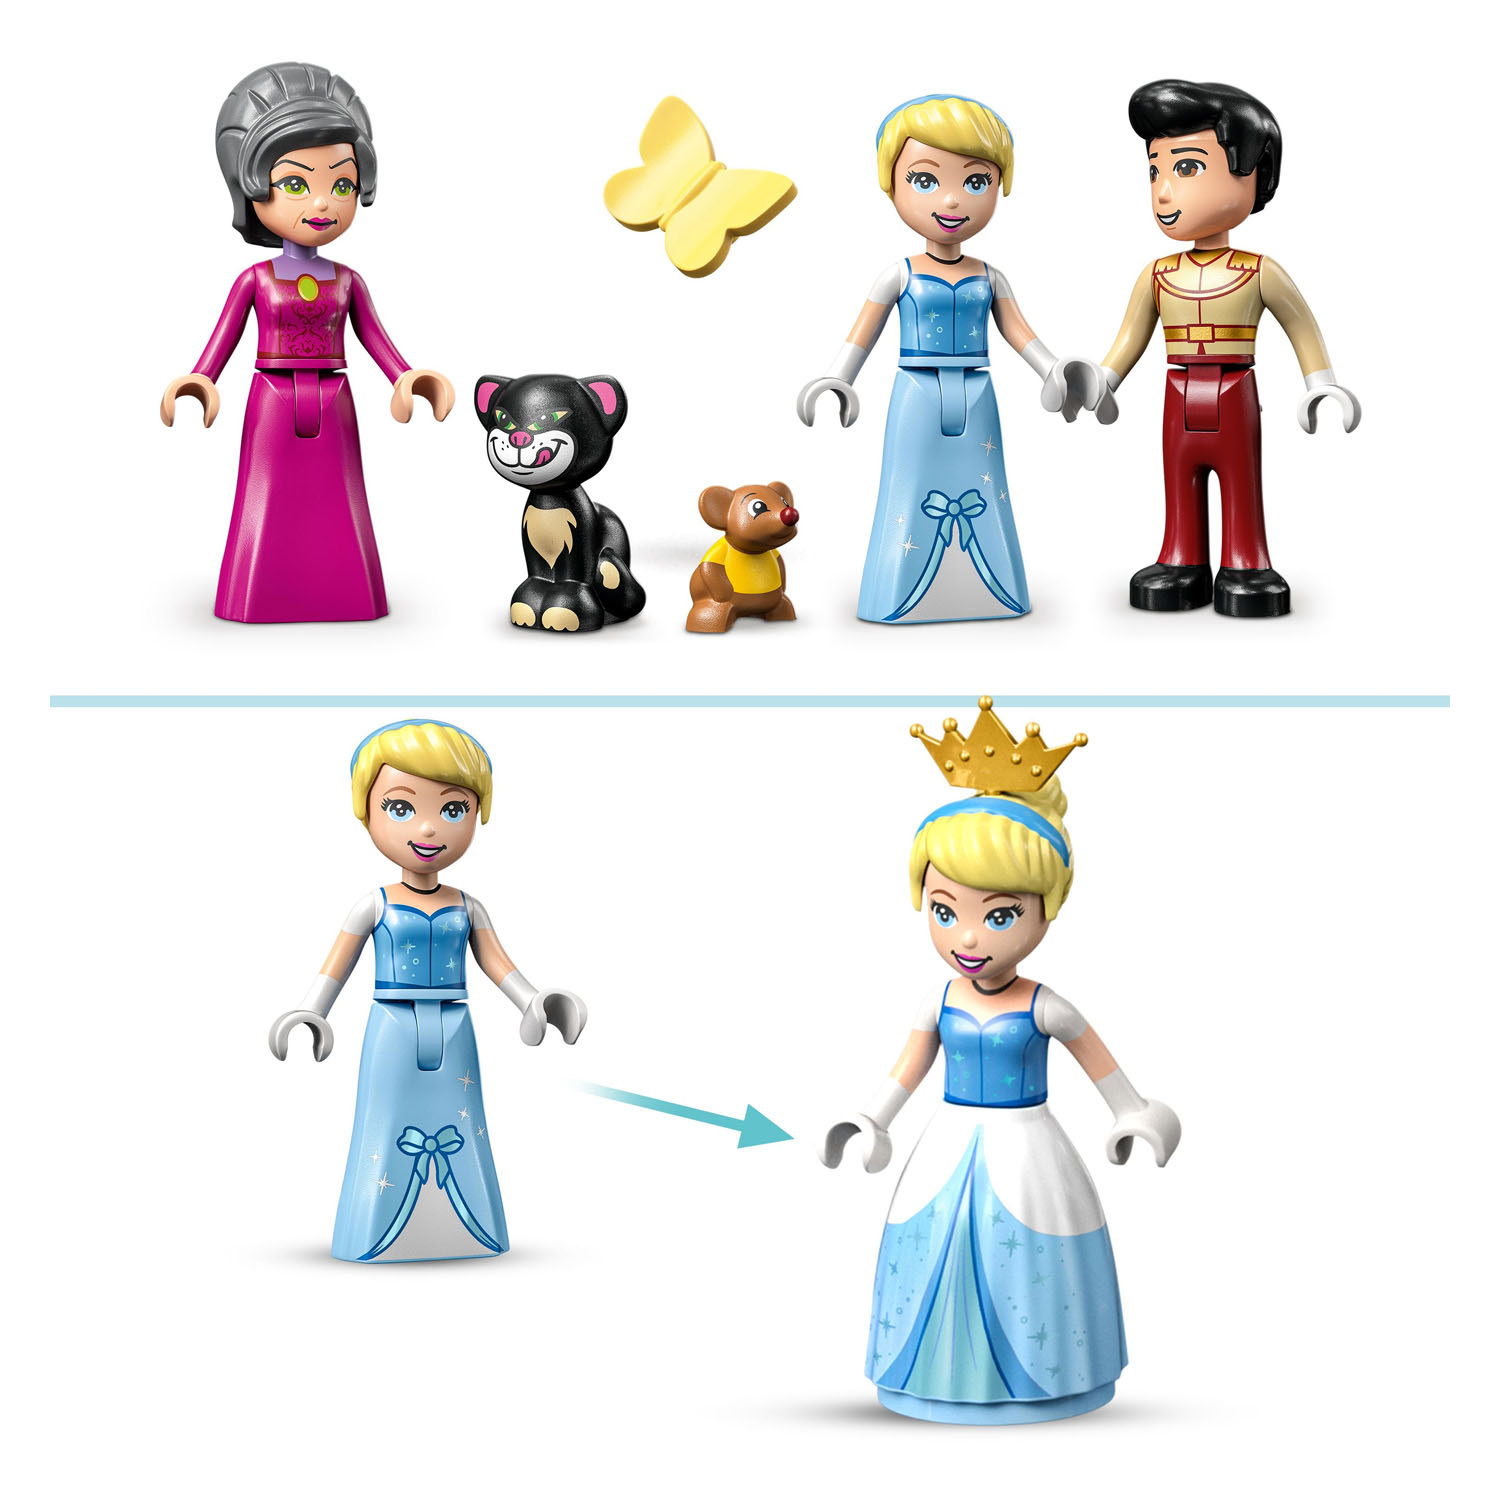 LEGO Disney Princess 43206 Het kasteel van Assepoester en de Prins